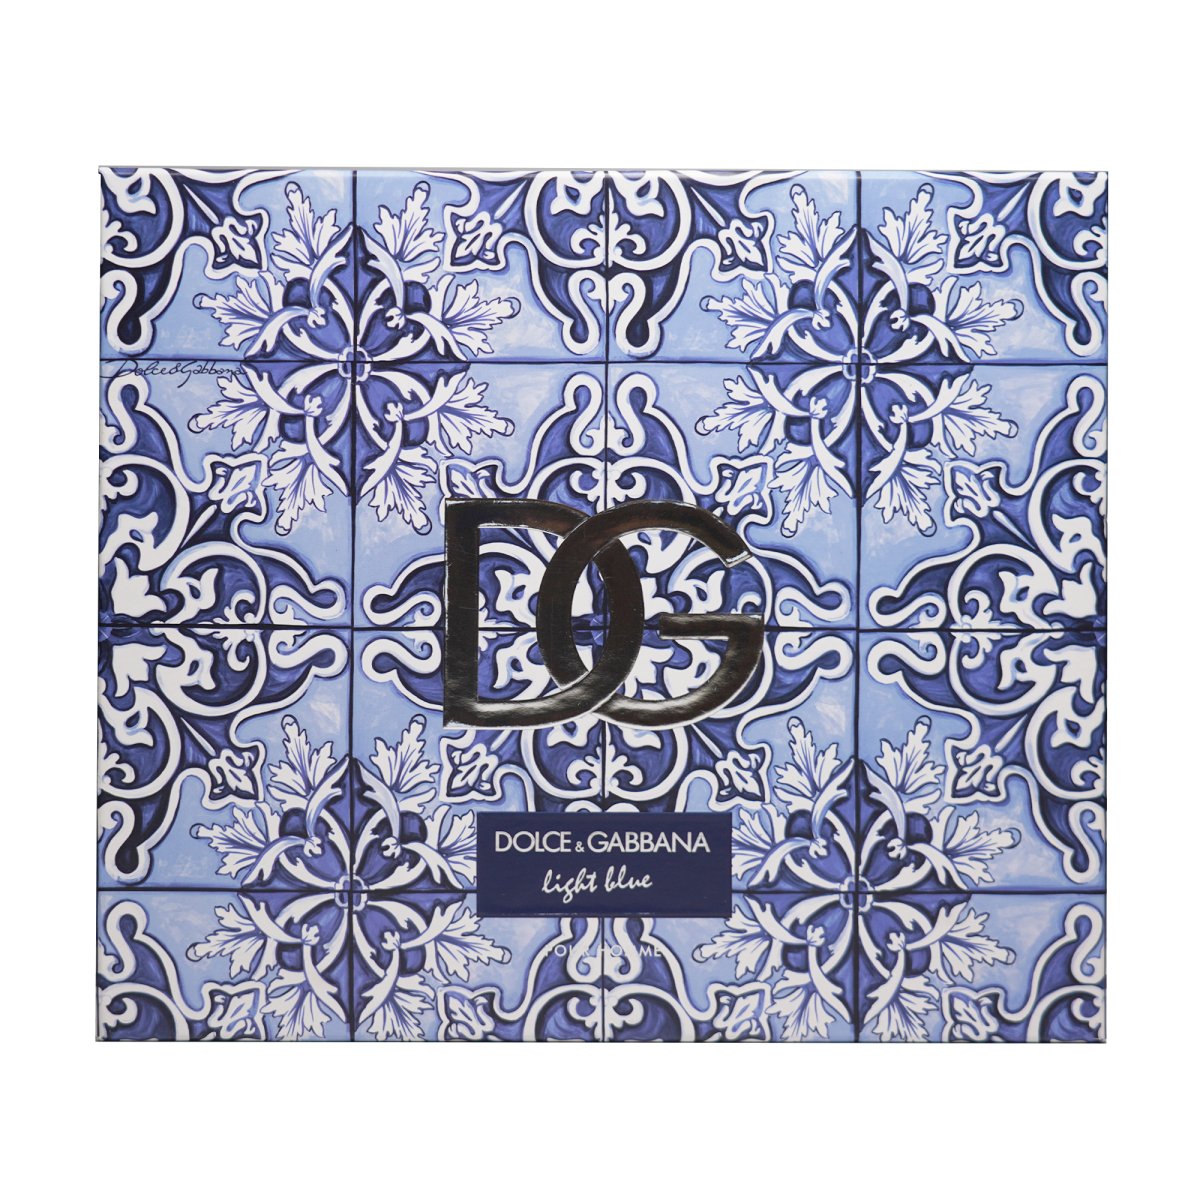 Dolce & Gabbana Light Blue Pour Homme Eau de Toilette Duo Set - Perfume Head quarters - Dolce & Gabbana - Gift Set